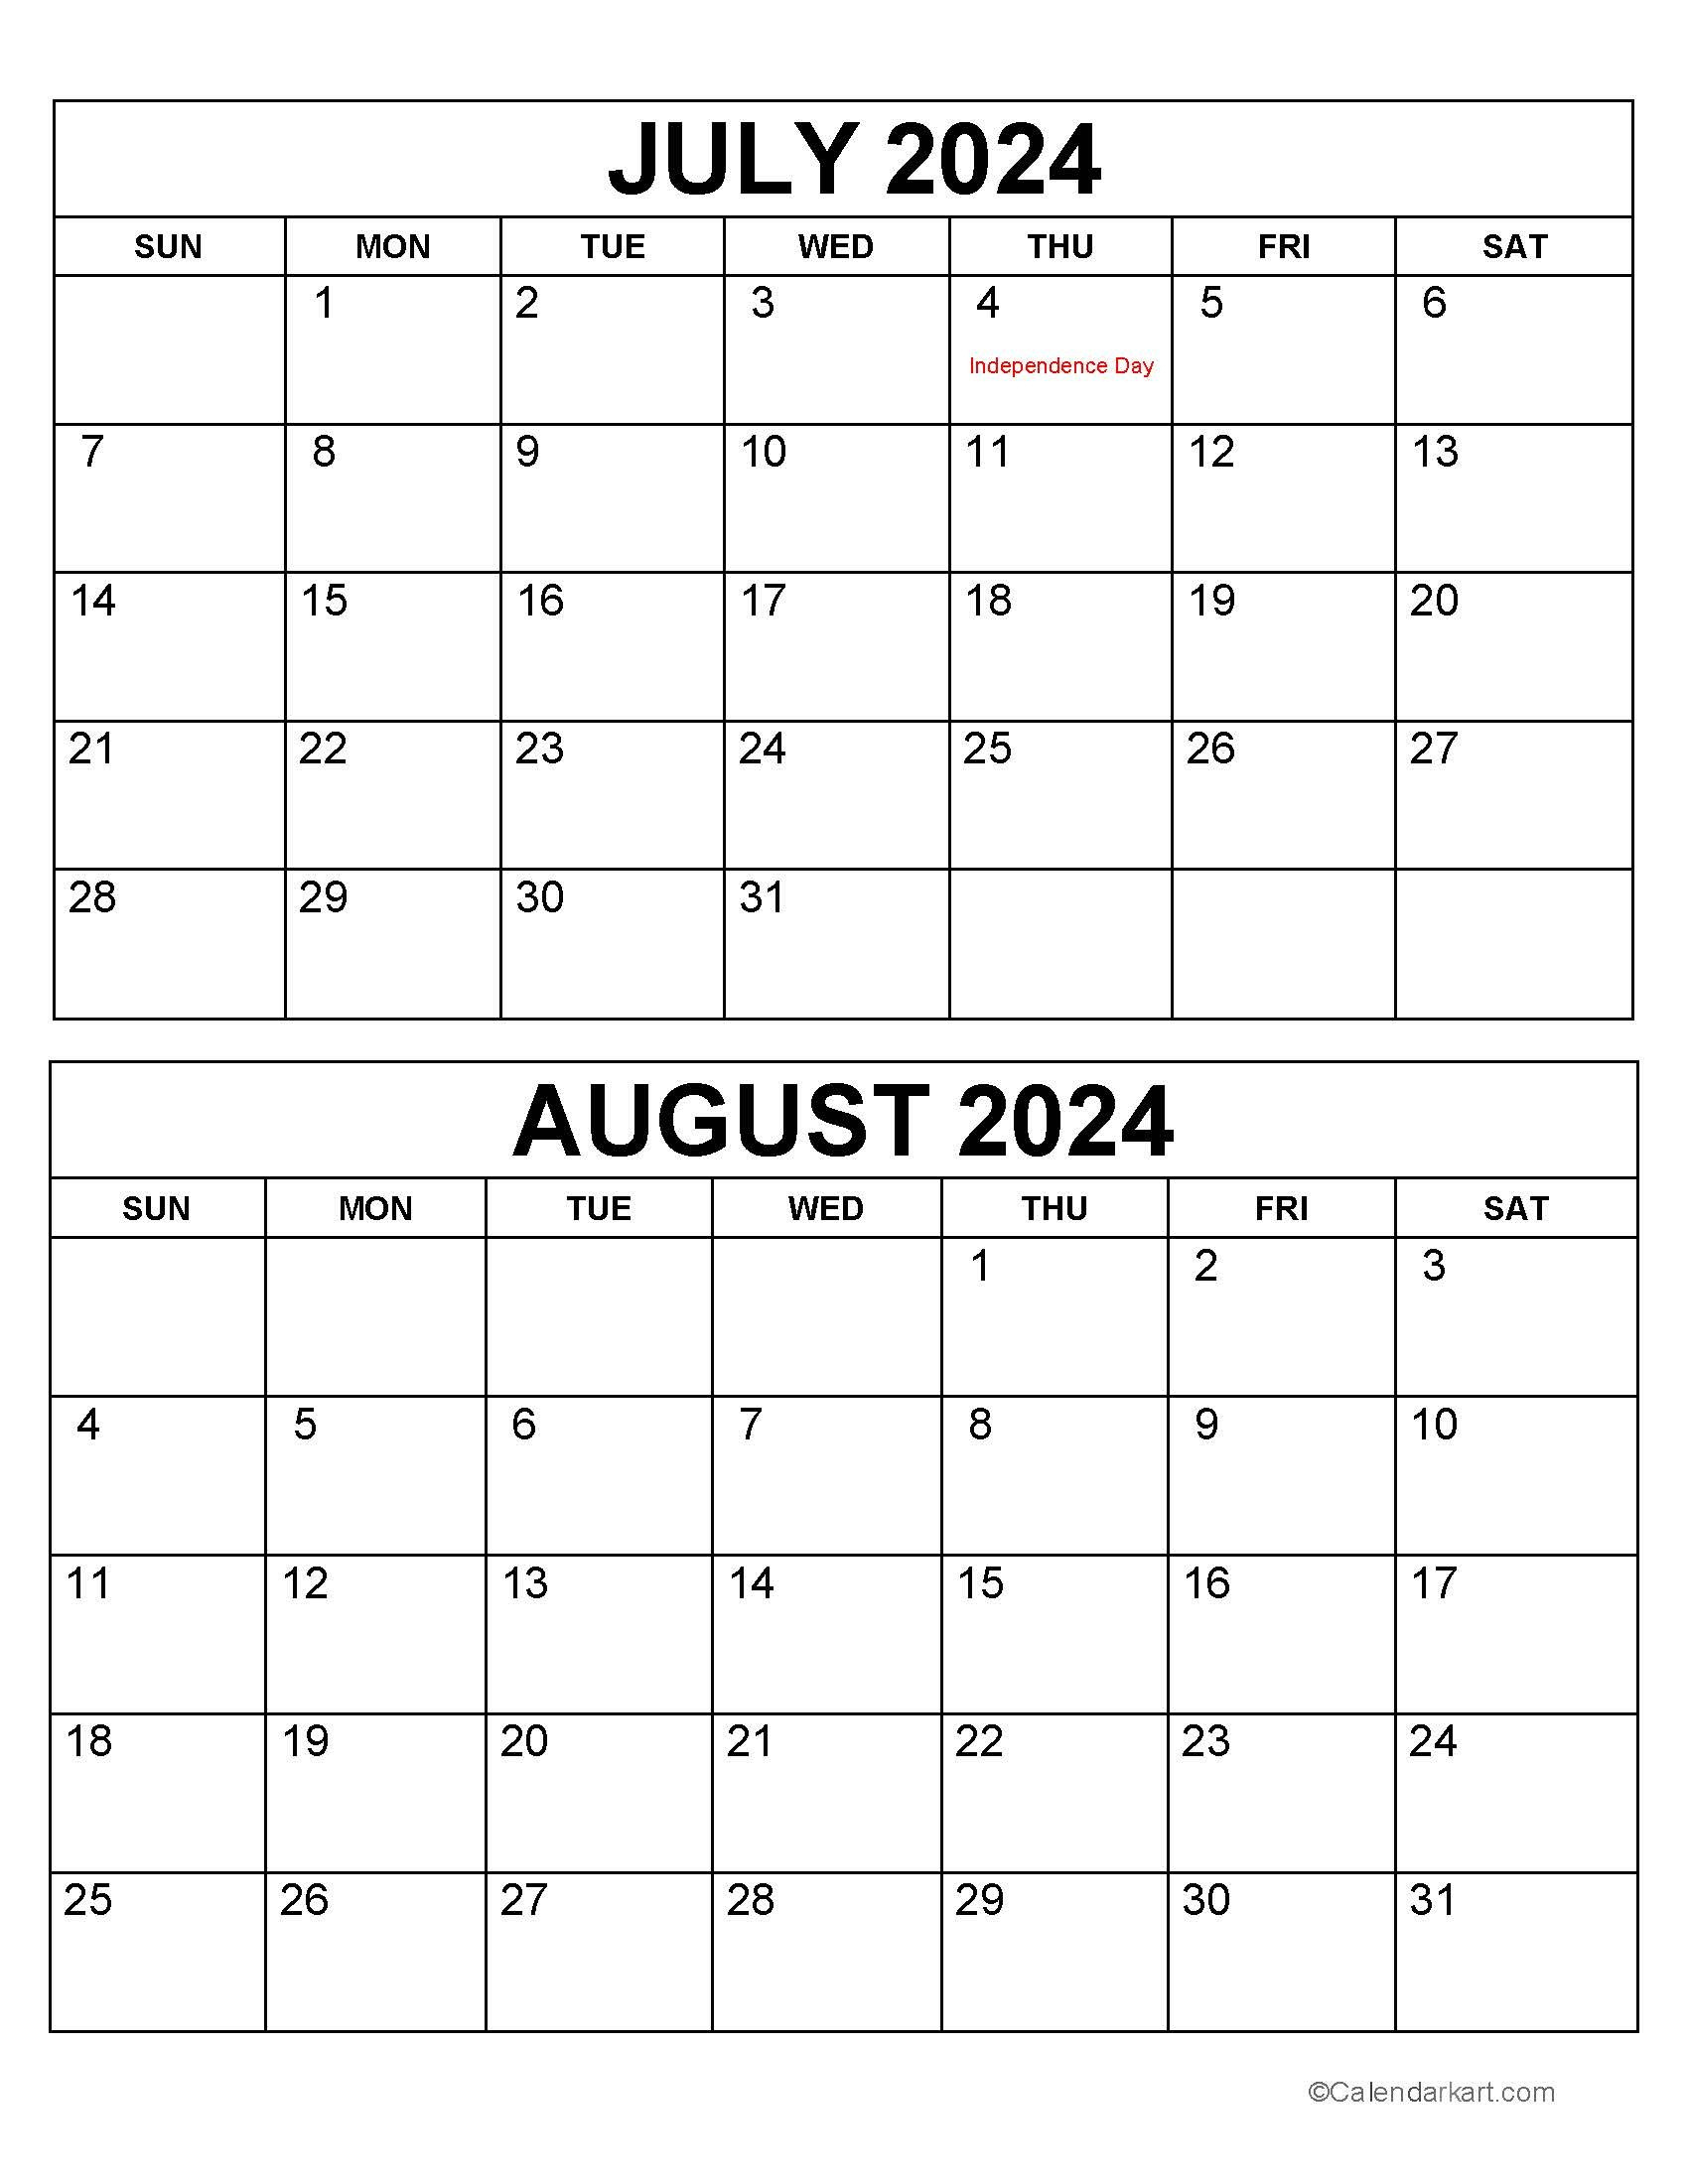 Printable July August 2024 Calendar | Calendarkart with Calendar Template July August 2024